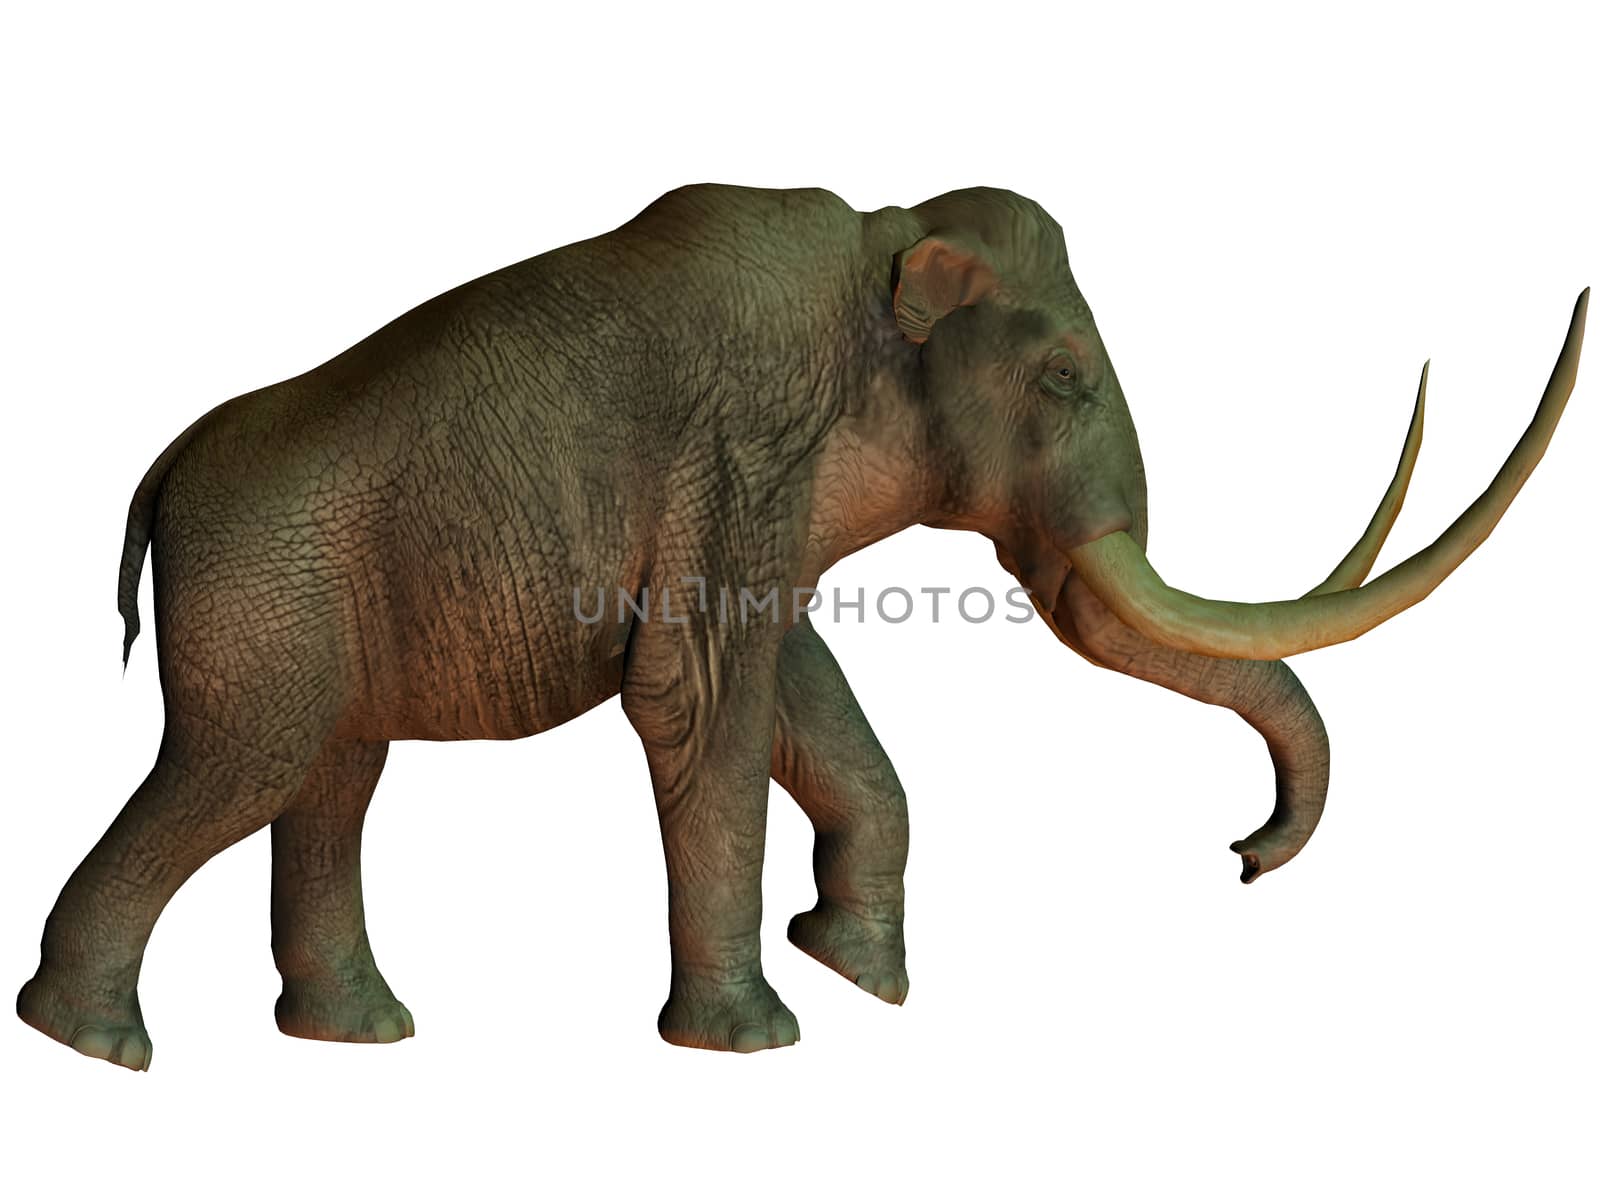 Columbian mammoth on White by Catmando